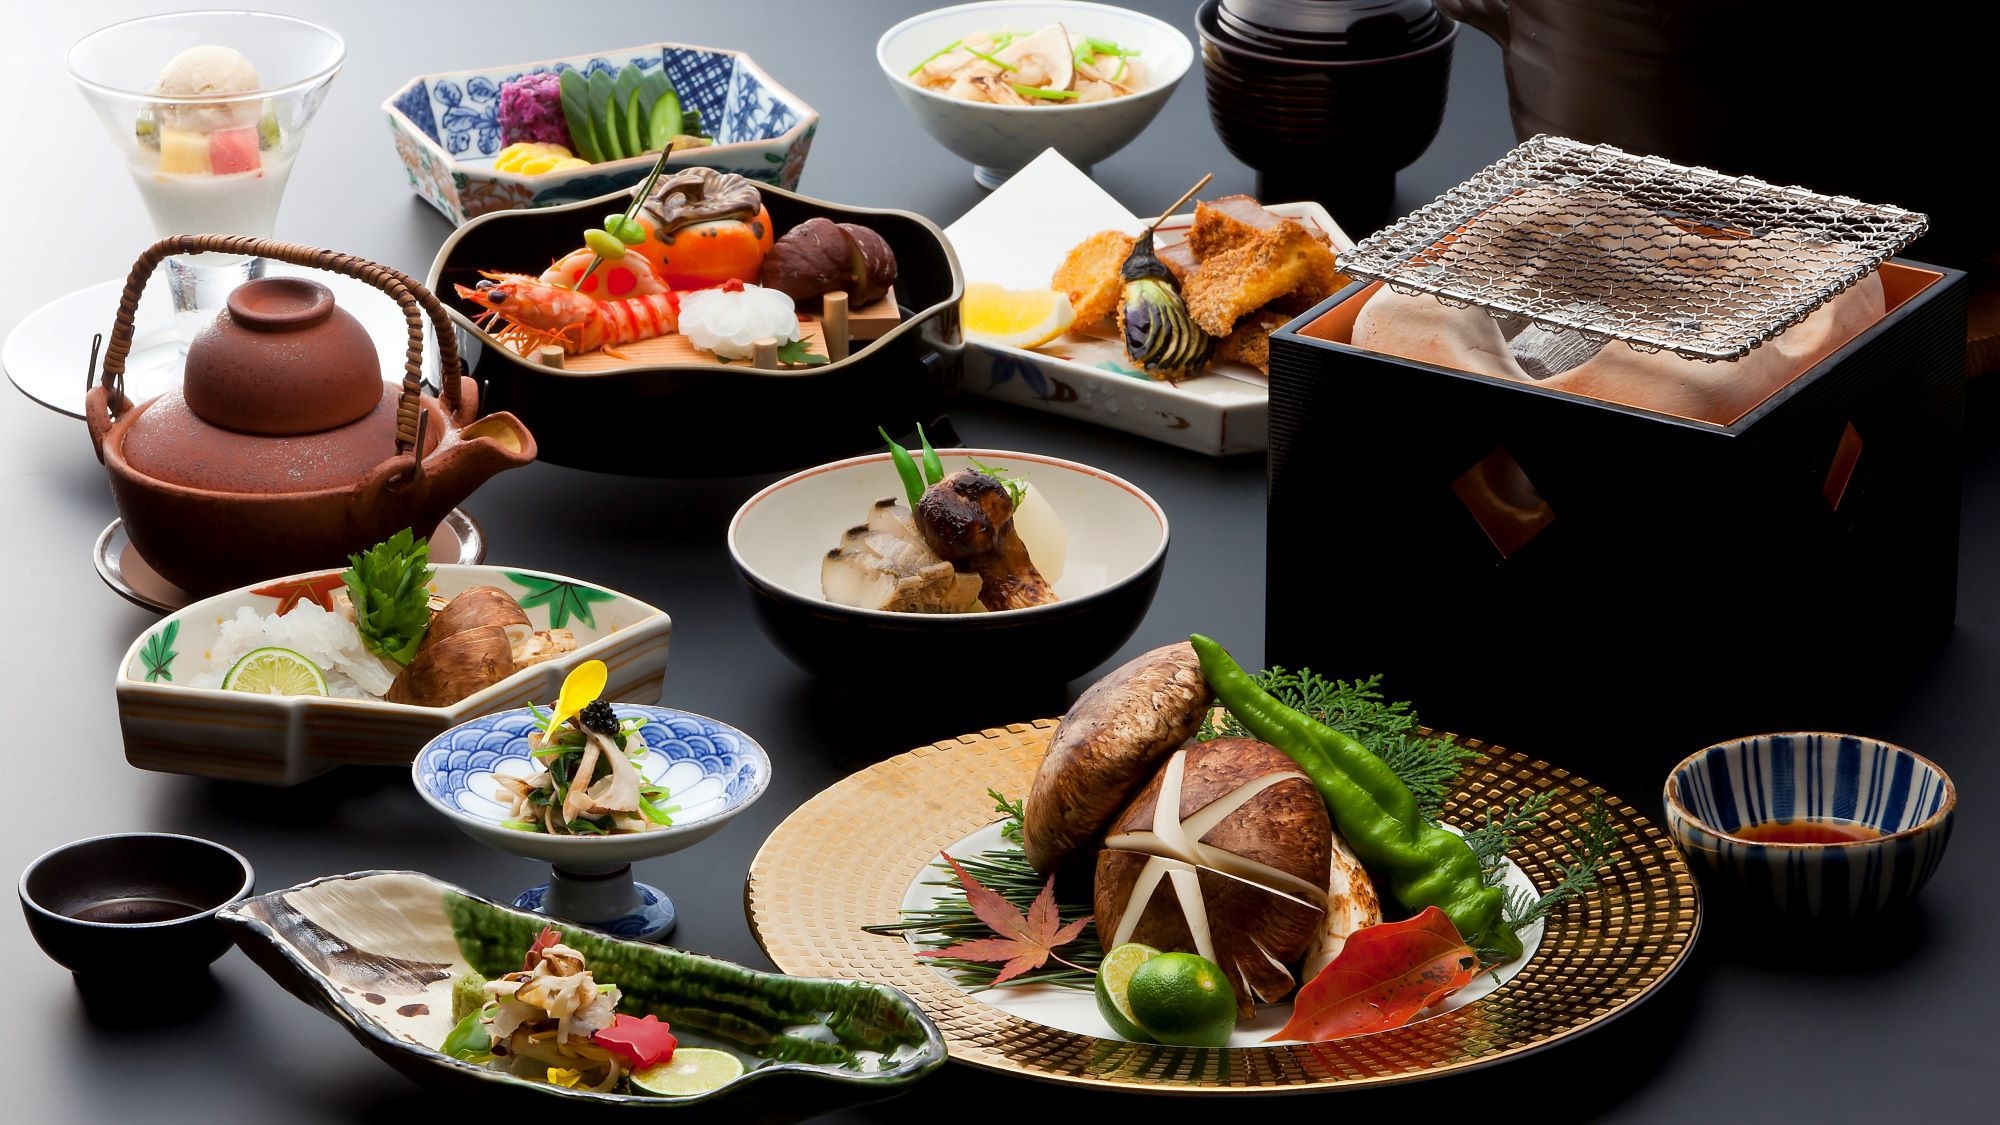 【お部屋食】「松茸懐石」〜秋の味覚“松茸”をすべてのお料理にさまざまな調理法で使用した献立です〜